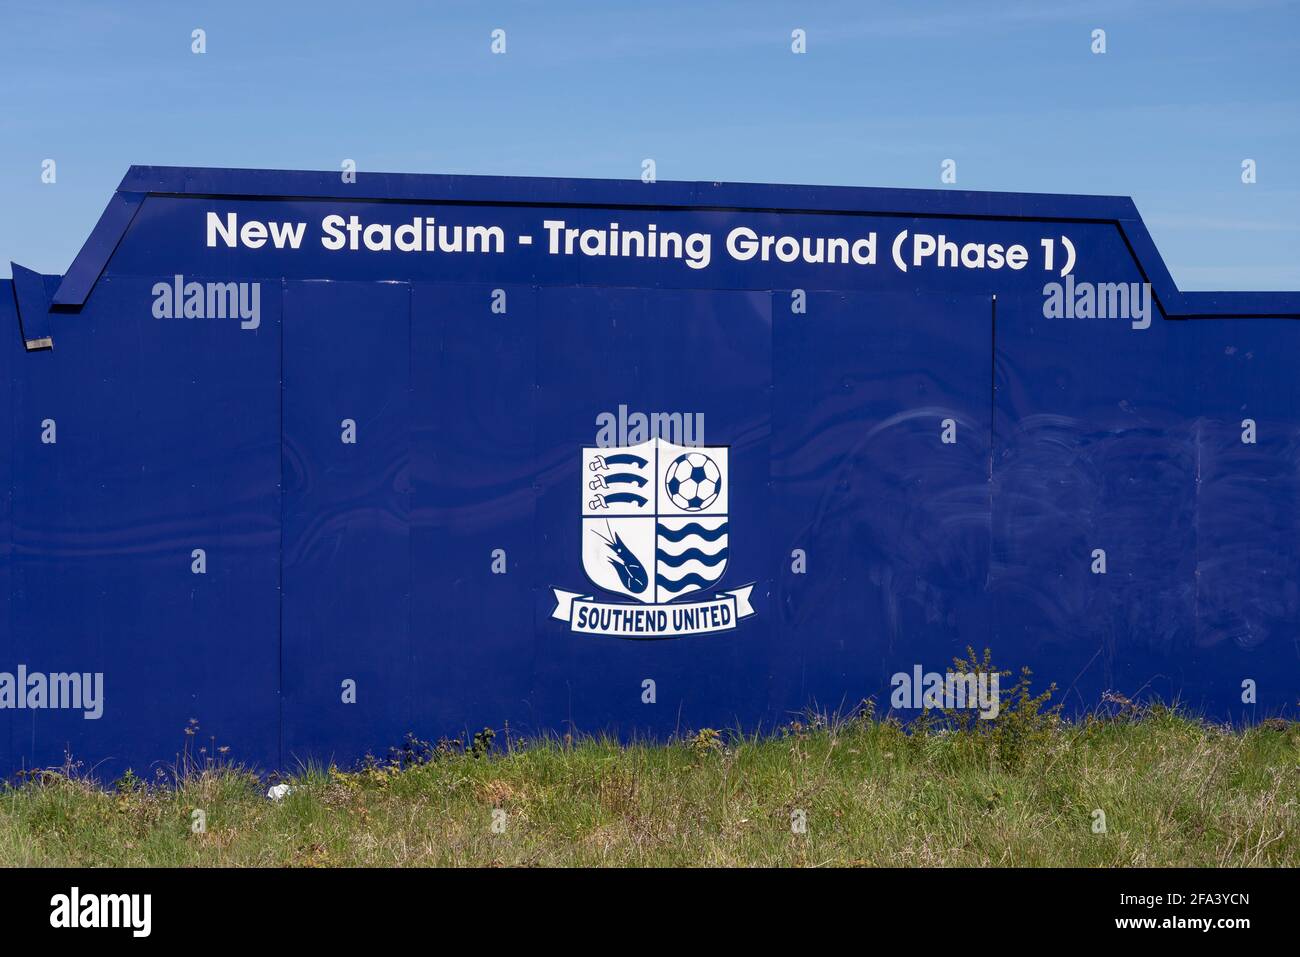 Construcción de un sitio de acaparamiento alrededor del propuesto Southend Utd club de fútbol nuevo estadio de entrenamiento en Fossetts Way, Fossetts Farm. Fase 1 de la formación Foto de stock